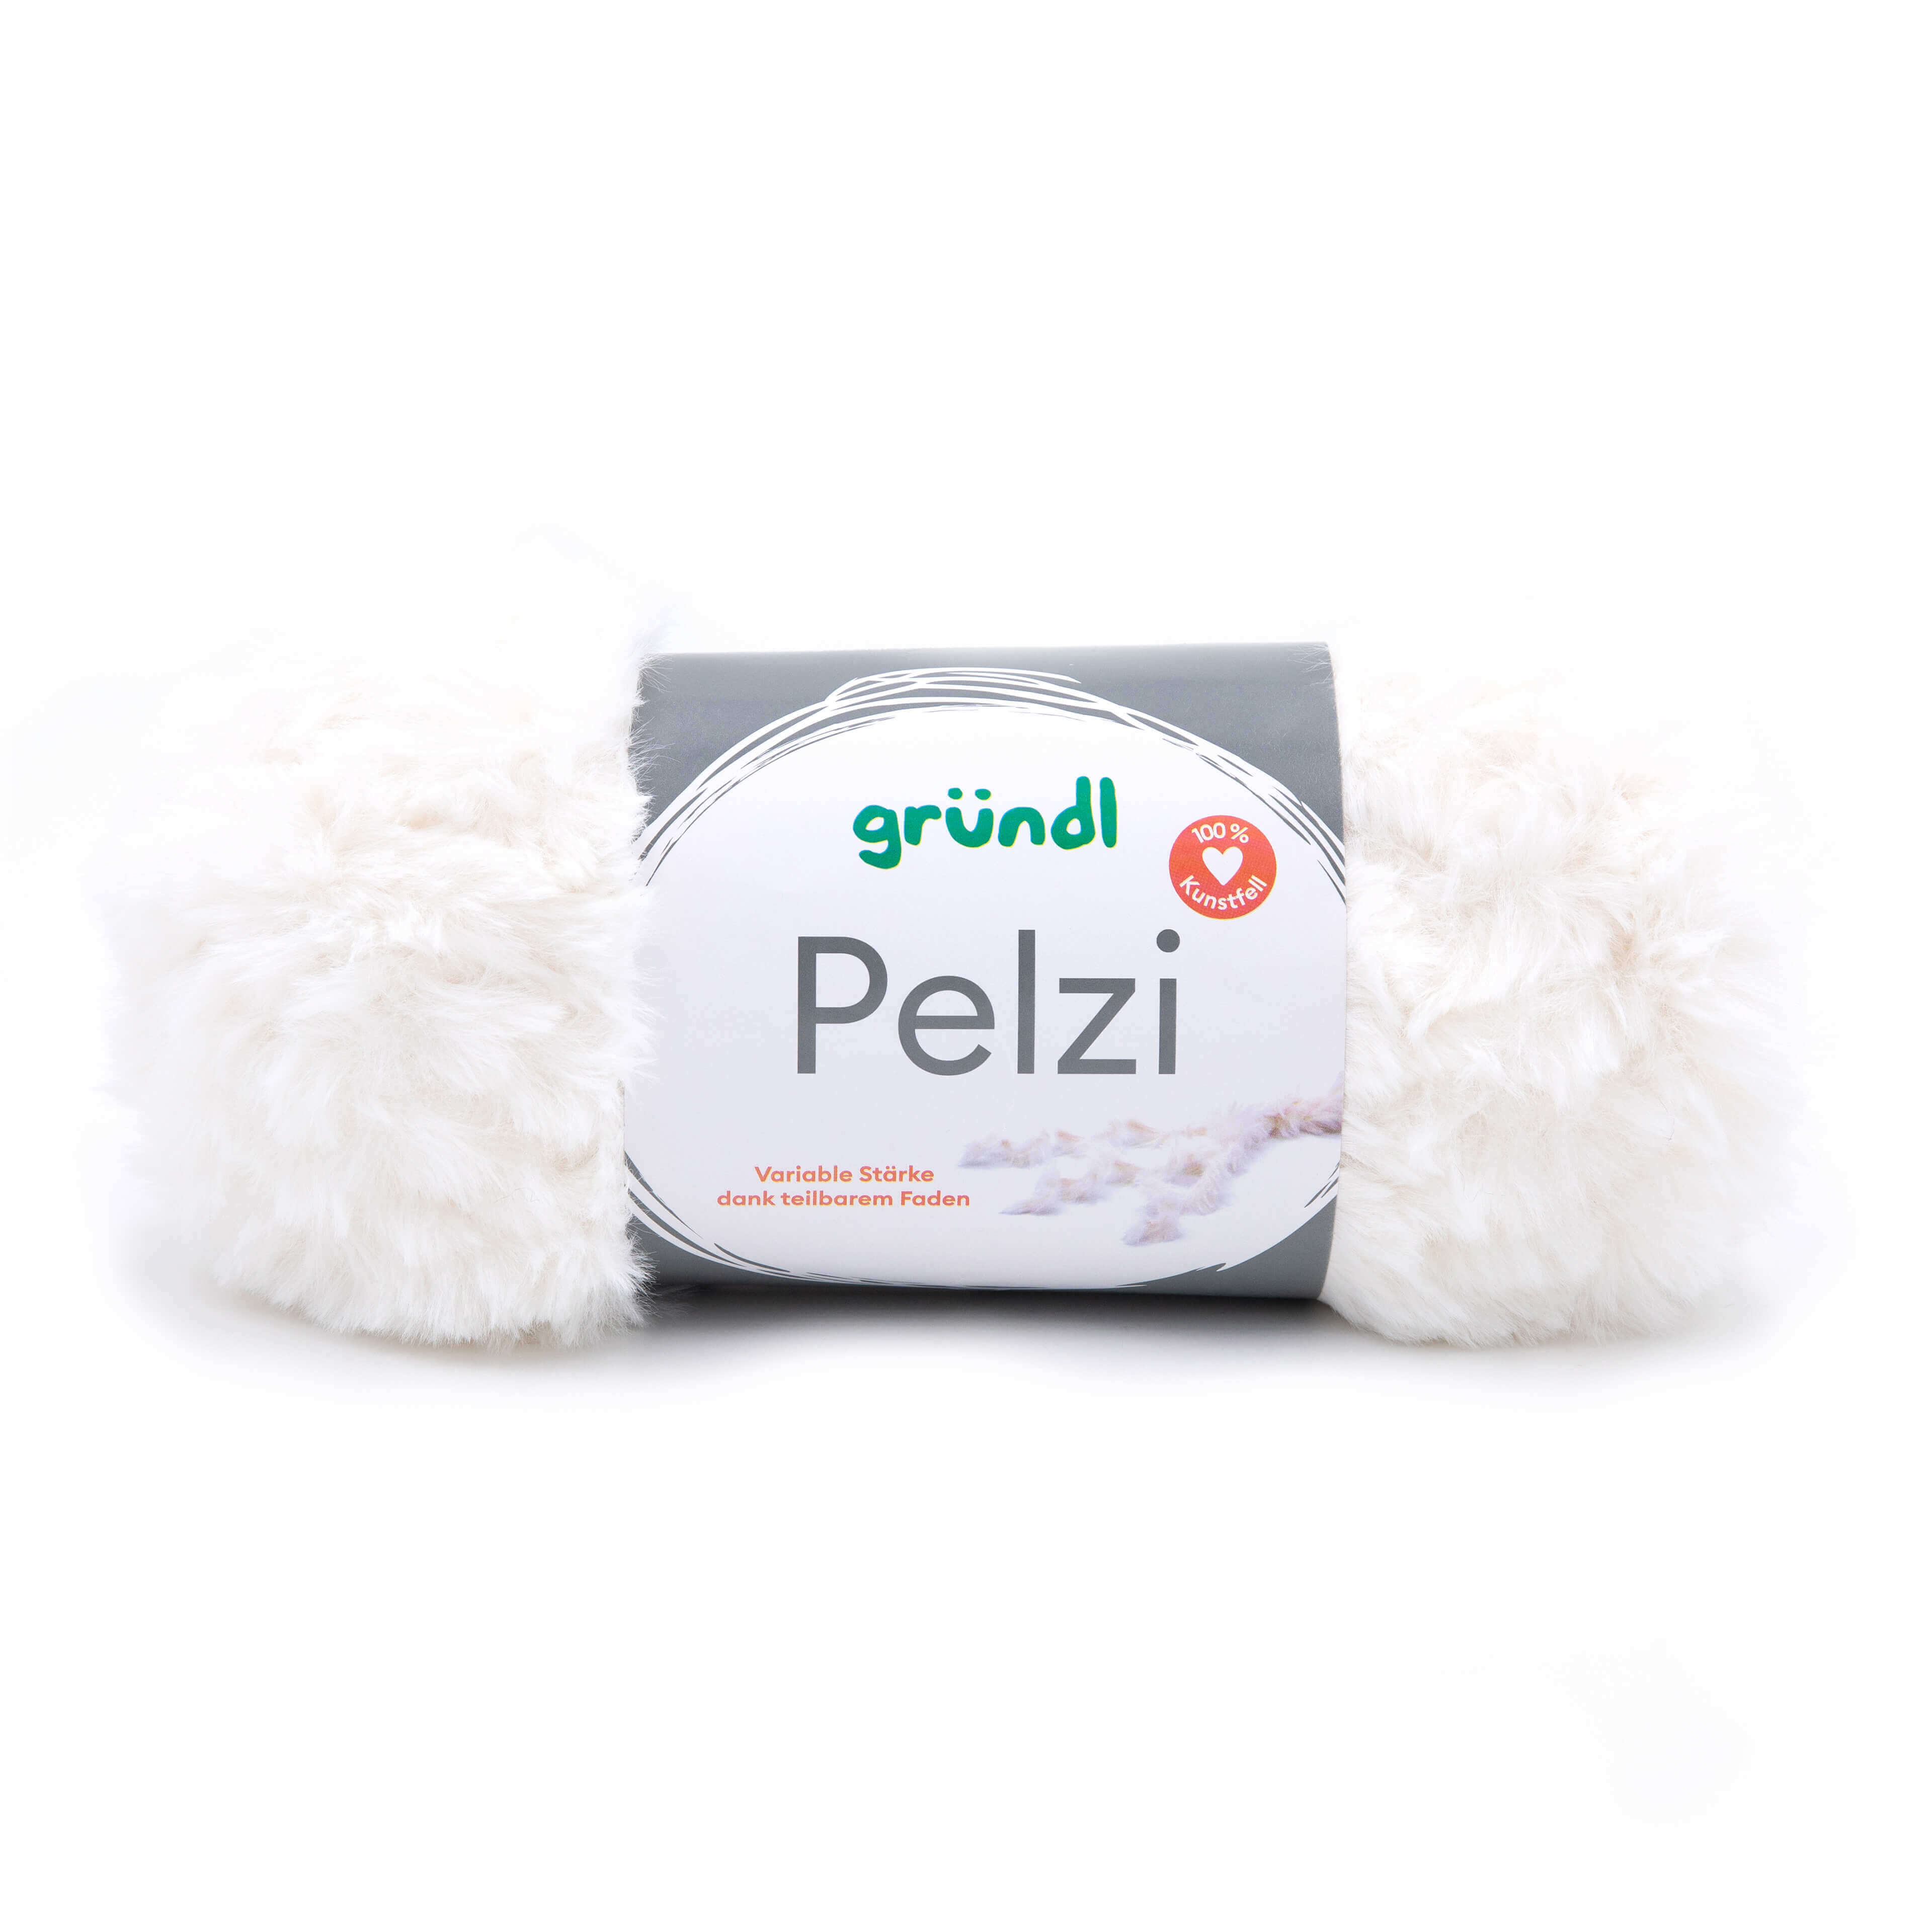 Pelzi